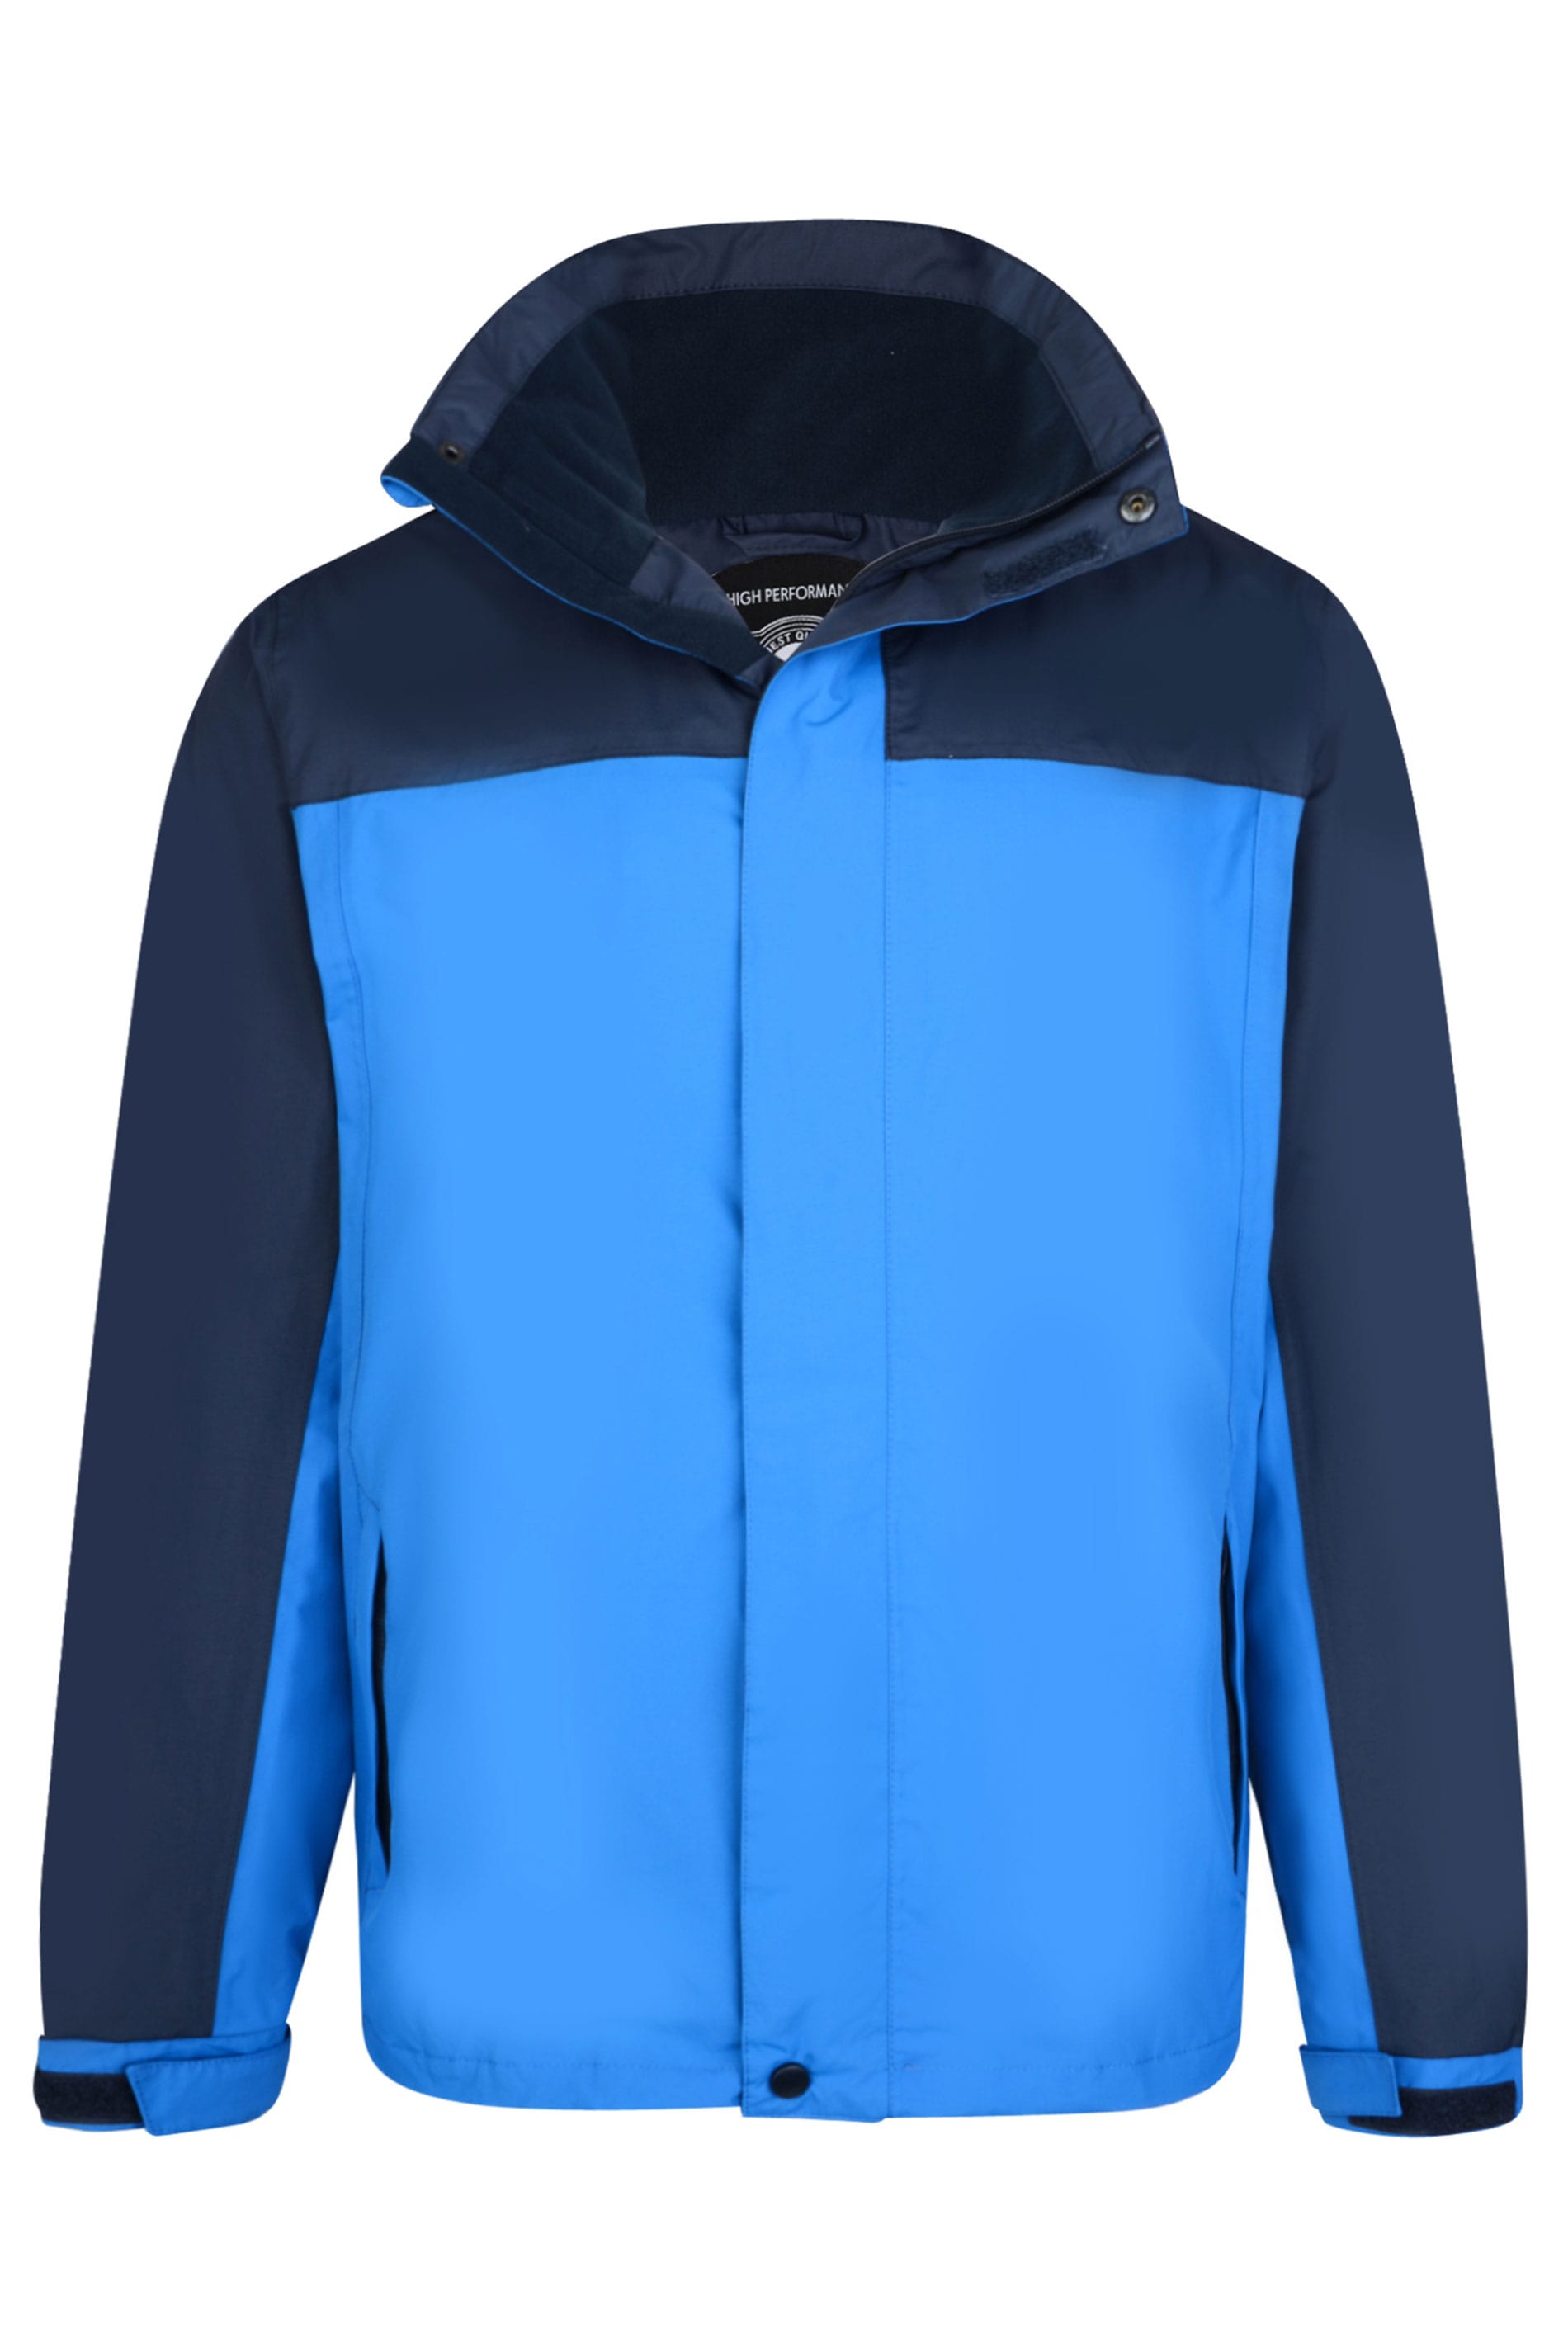 KAM Blue Colour Block Waterproof Jacket | BadRhino 2